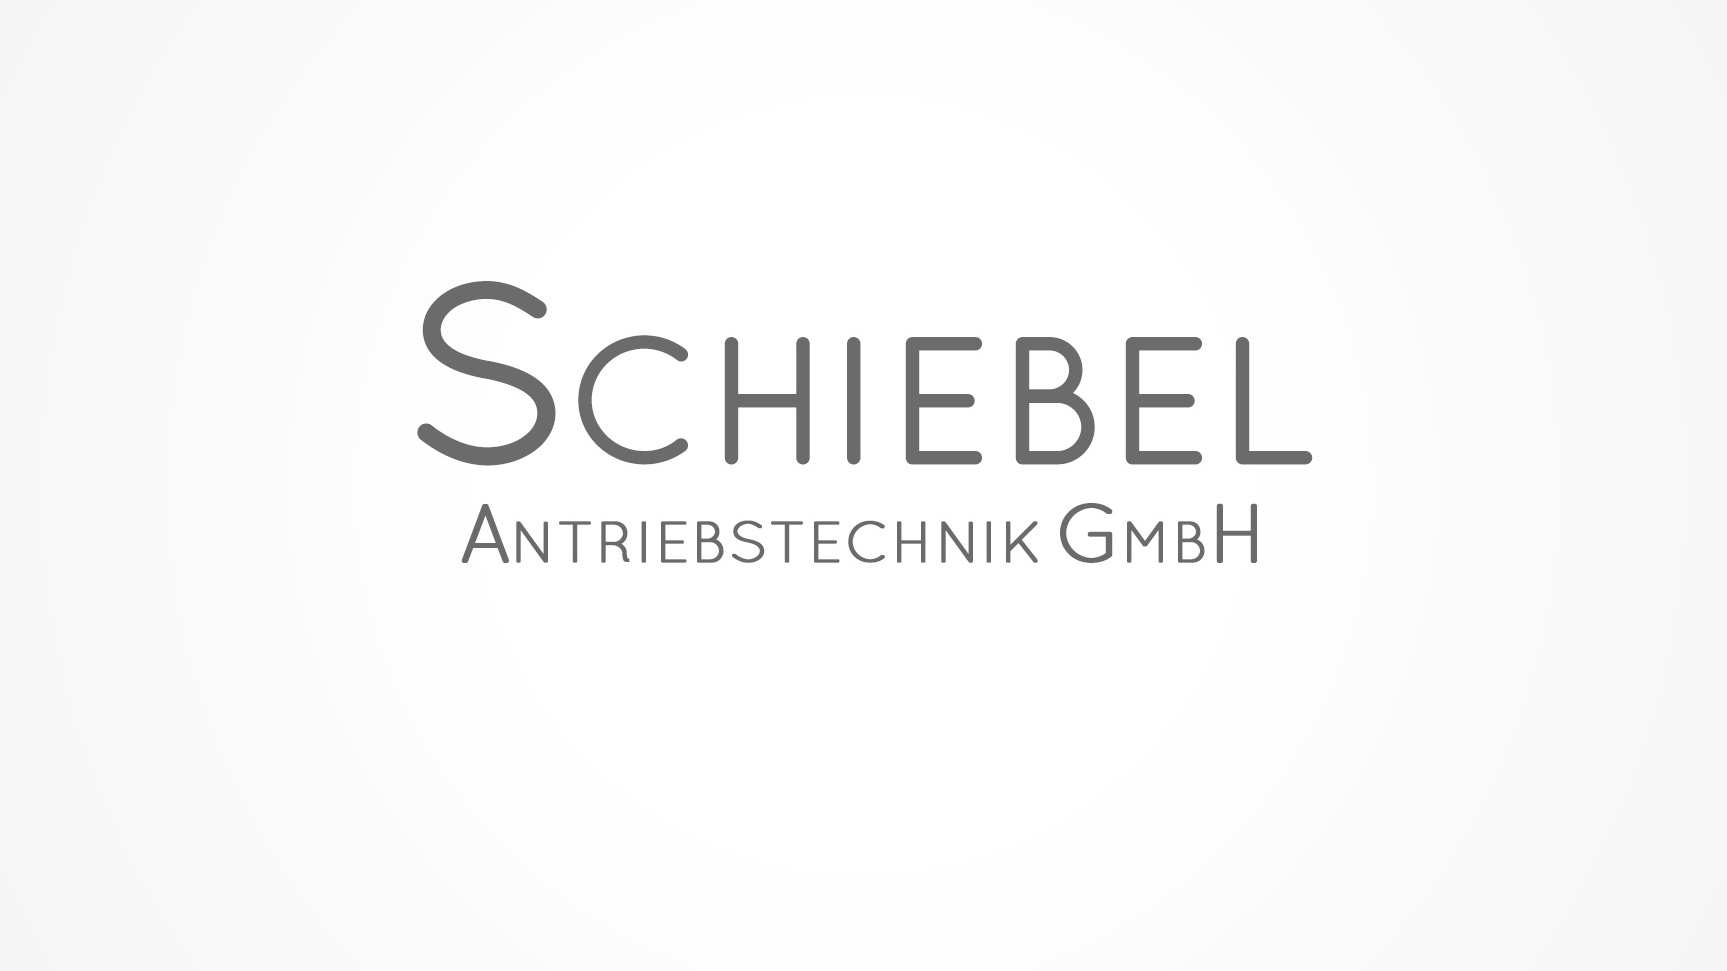 Schiebel Antriebstechnik GmbH